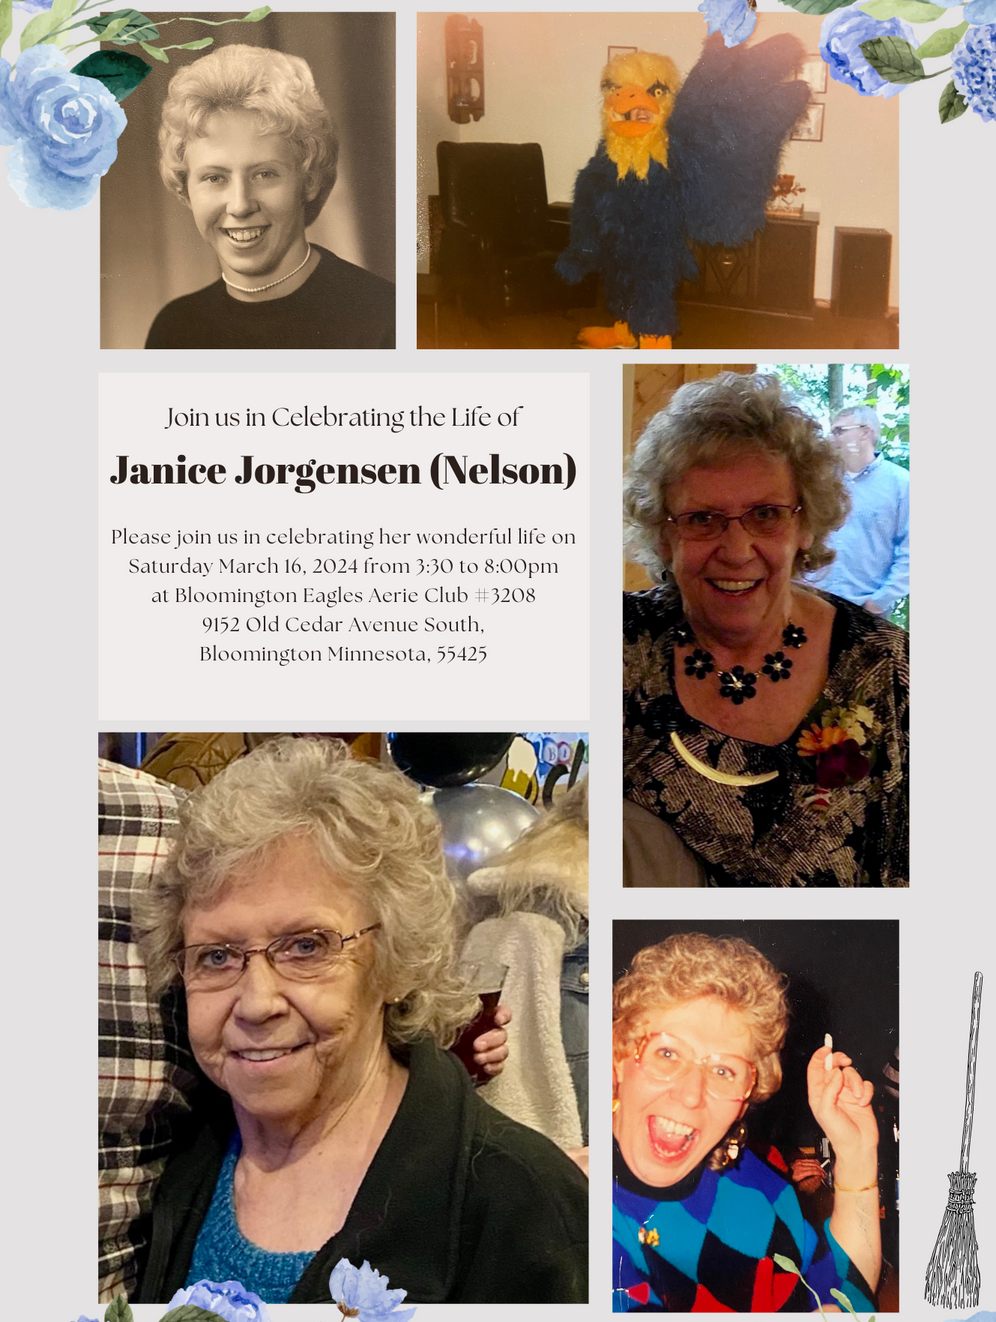 Janice Jorgensen